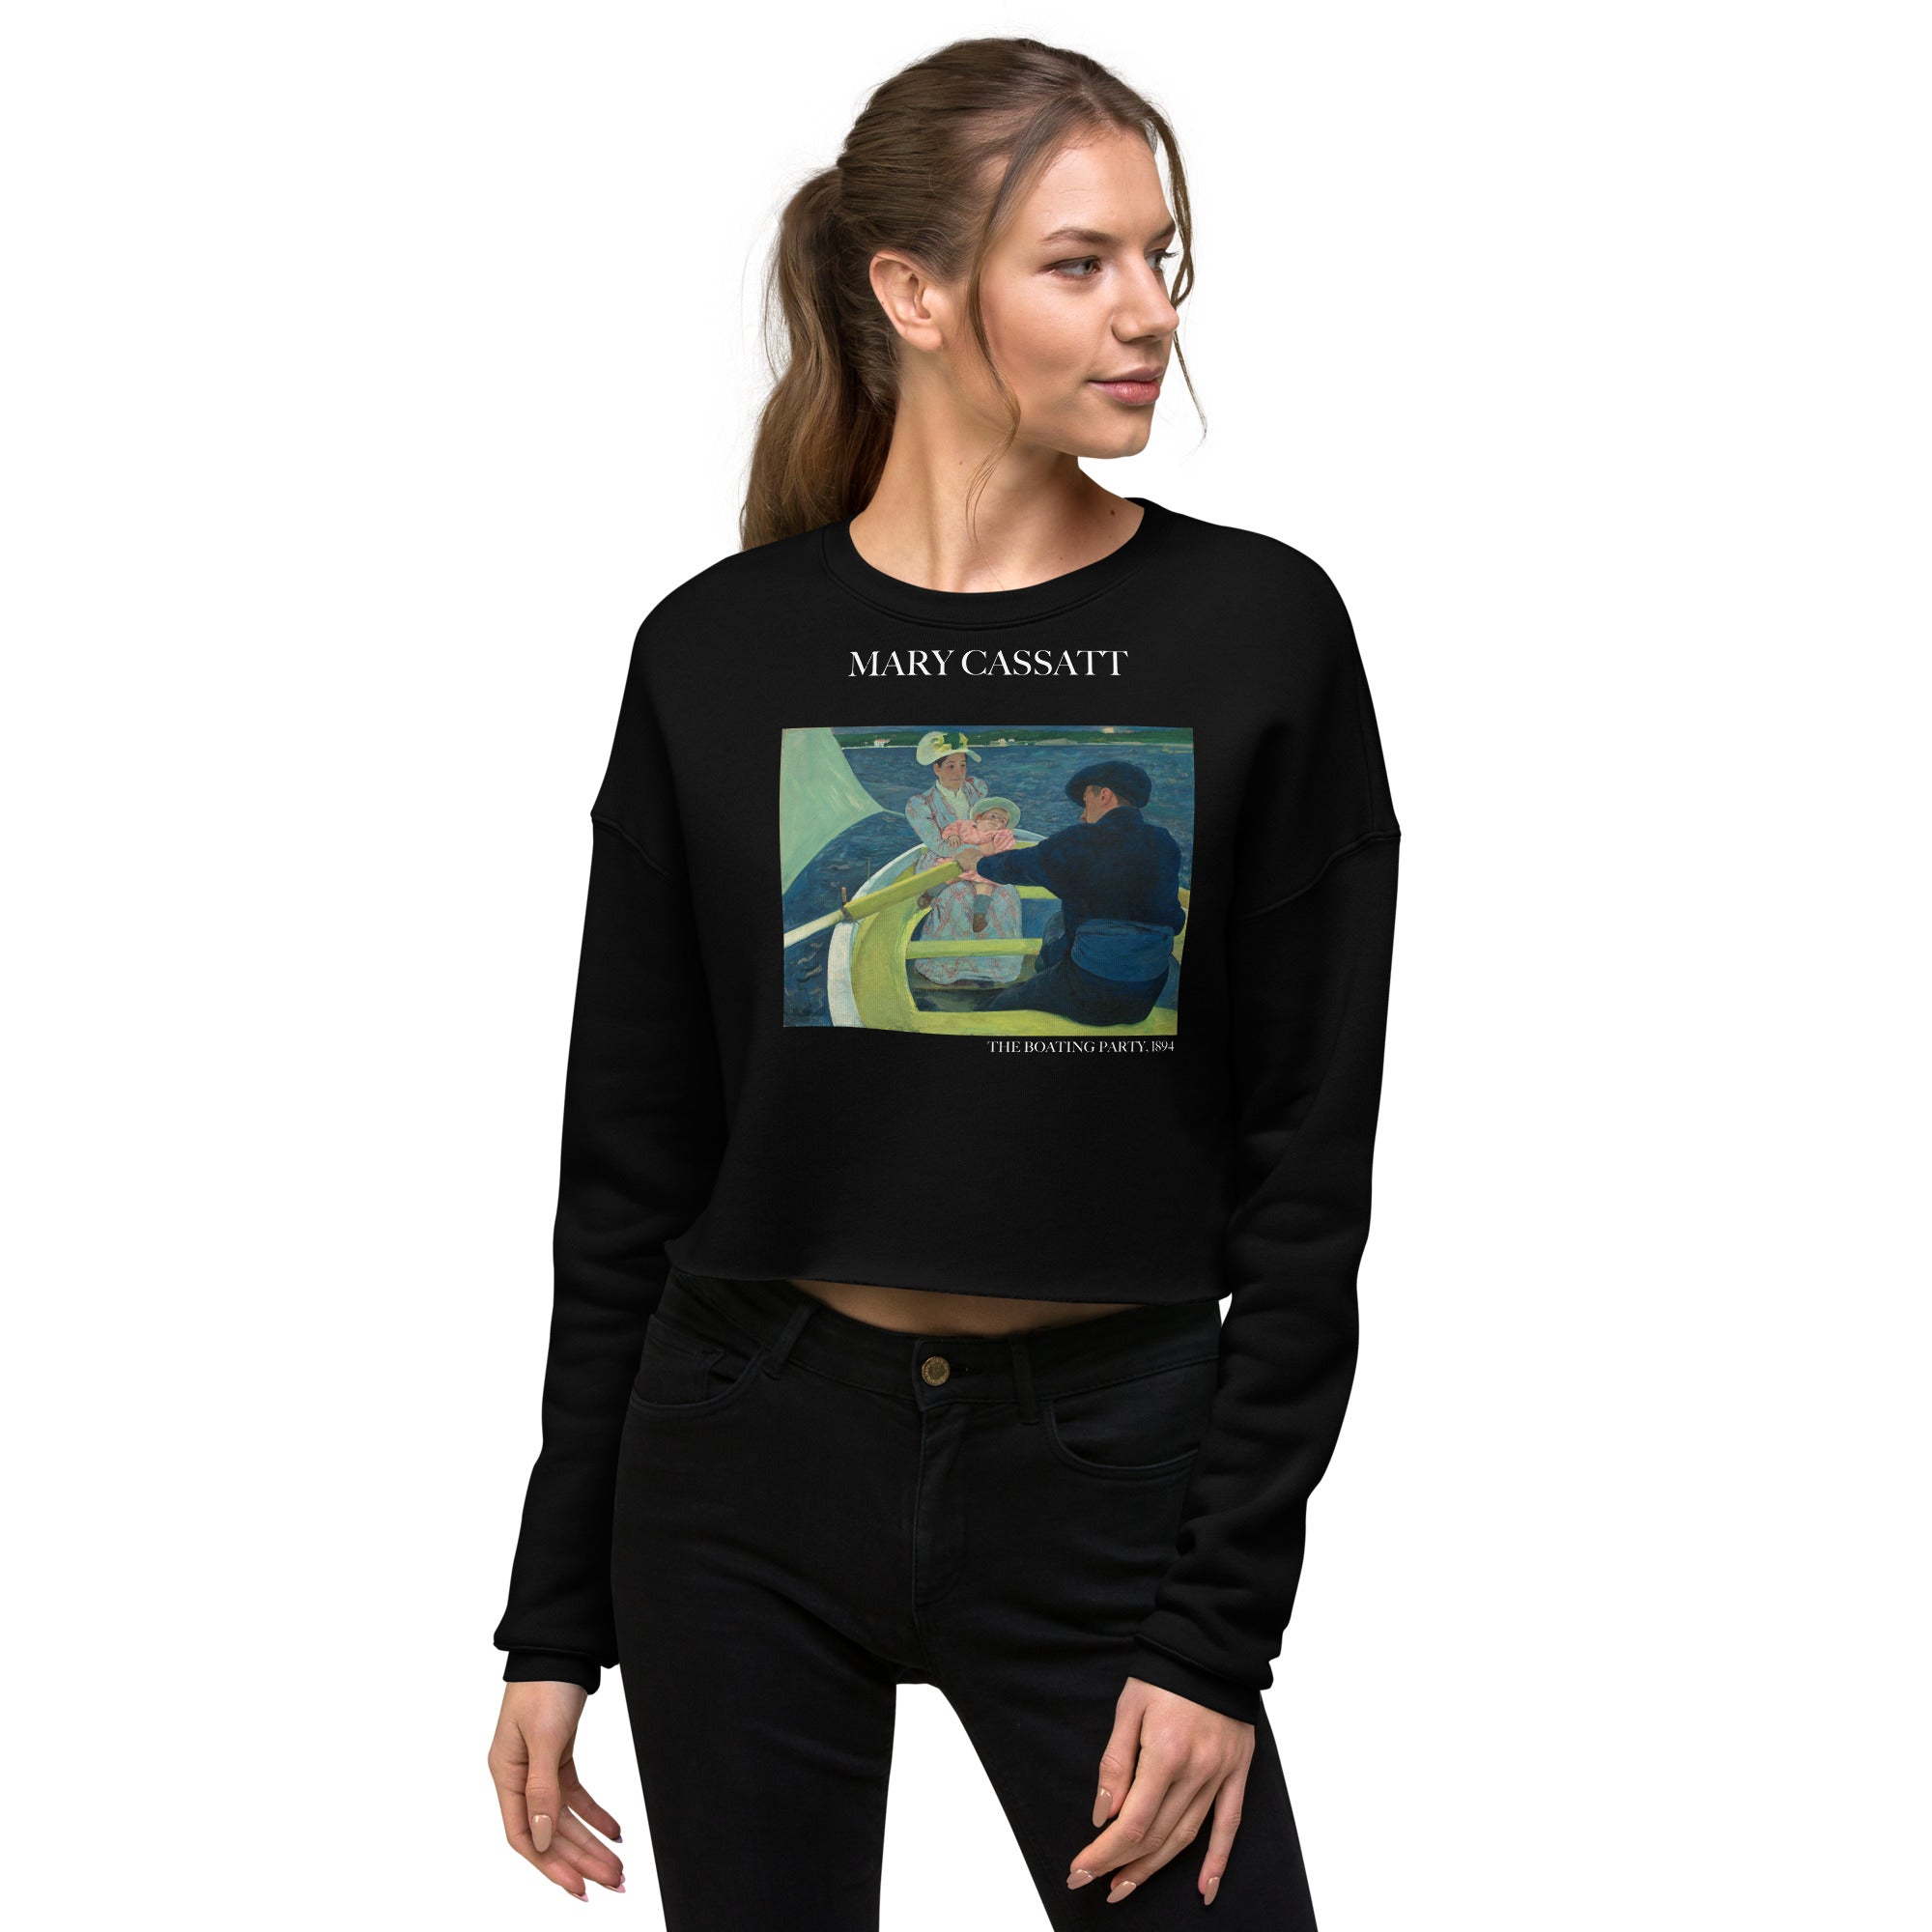 Kurzes Sweatshirt mit berühmtem Gemälde „The Boating Party“ von Mary Cassatt | Kurzes Sweatshirt mit Premium-Kunstmotiv